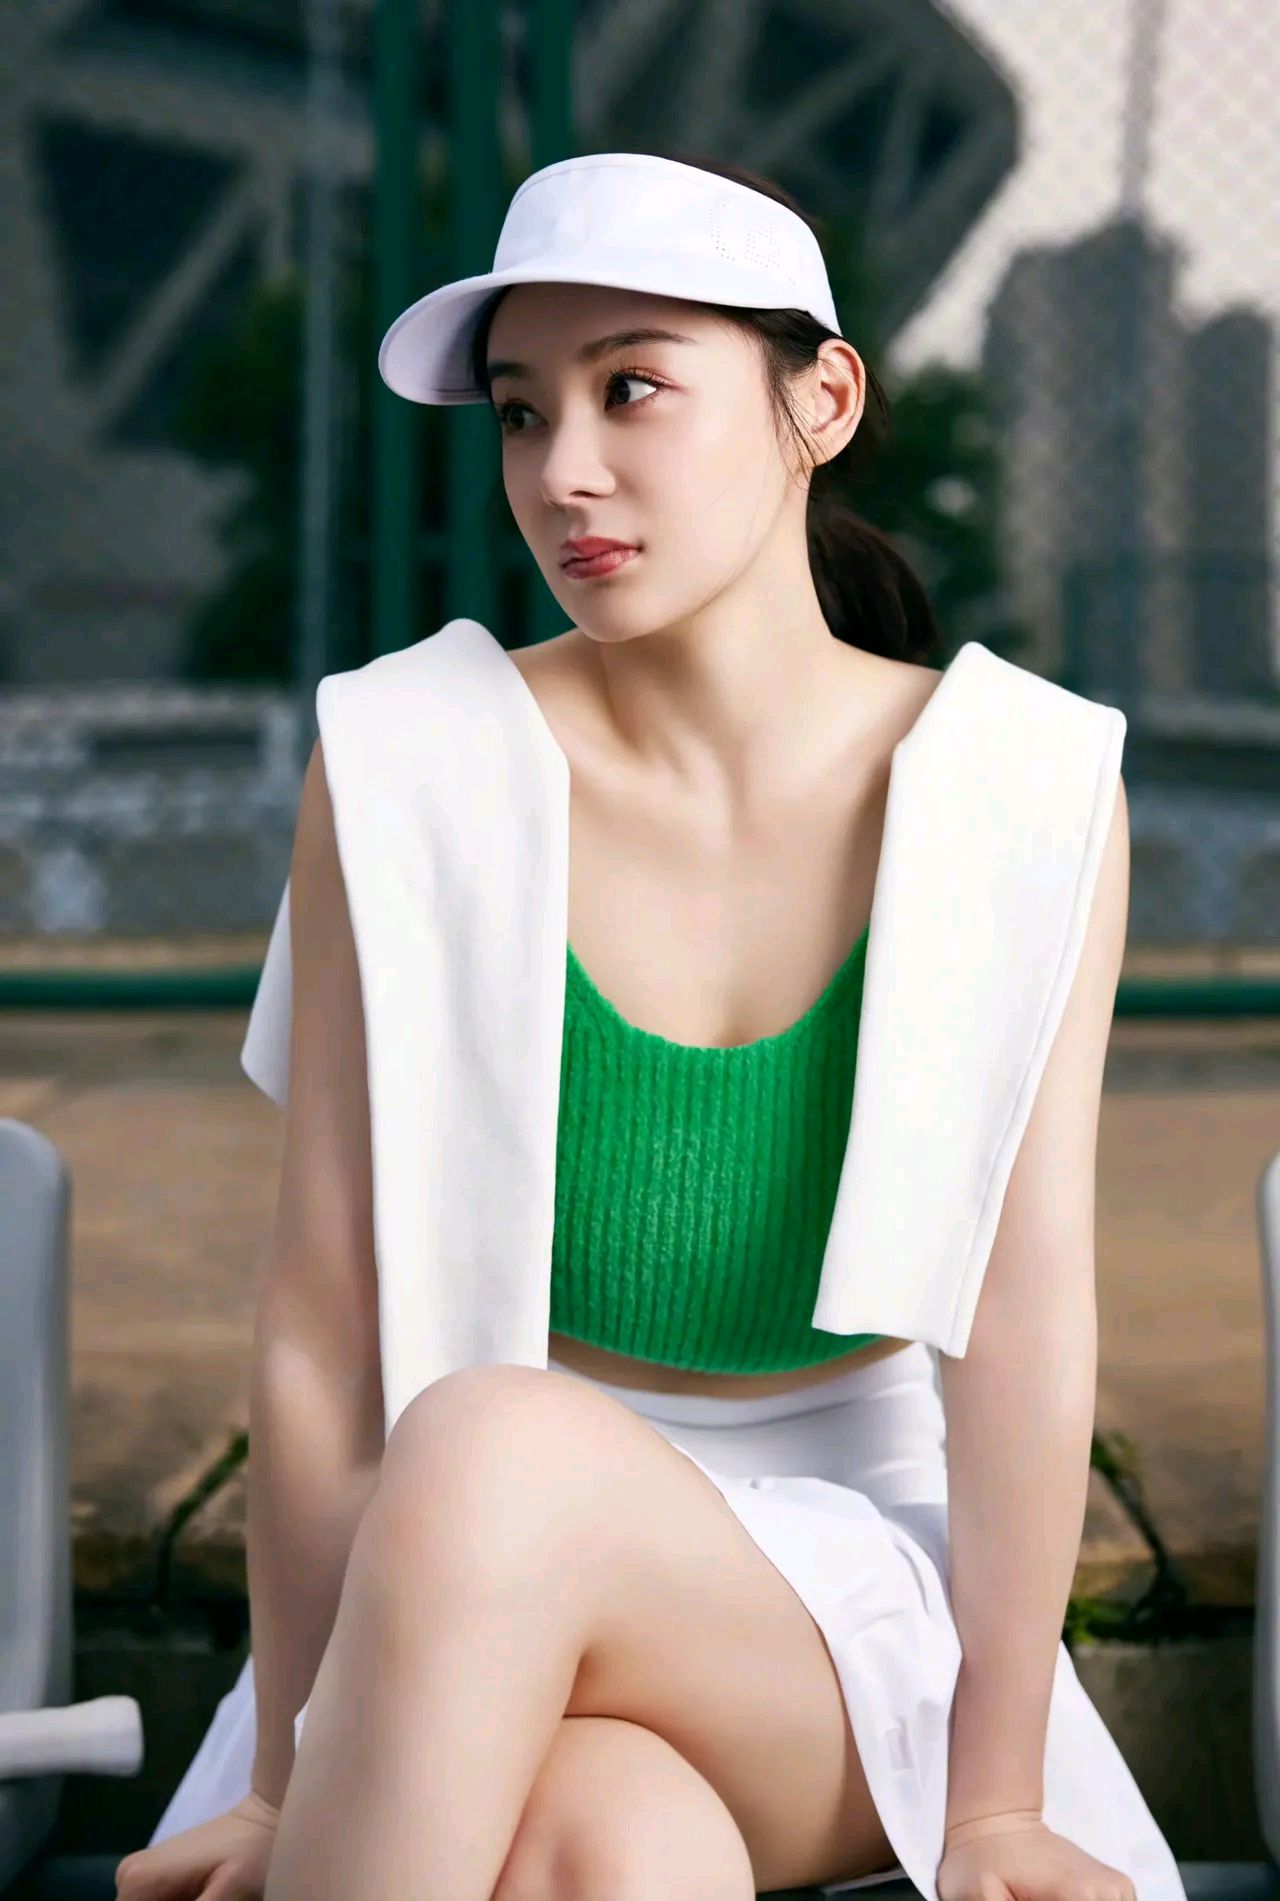 袁姗姗运动风写真,穿着绿色背心,清丽优雅